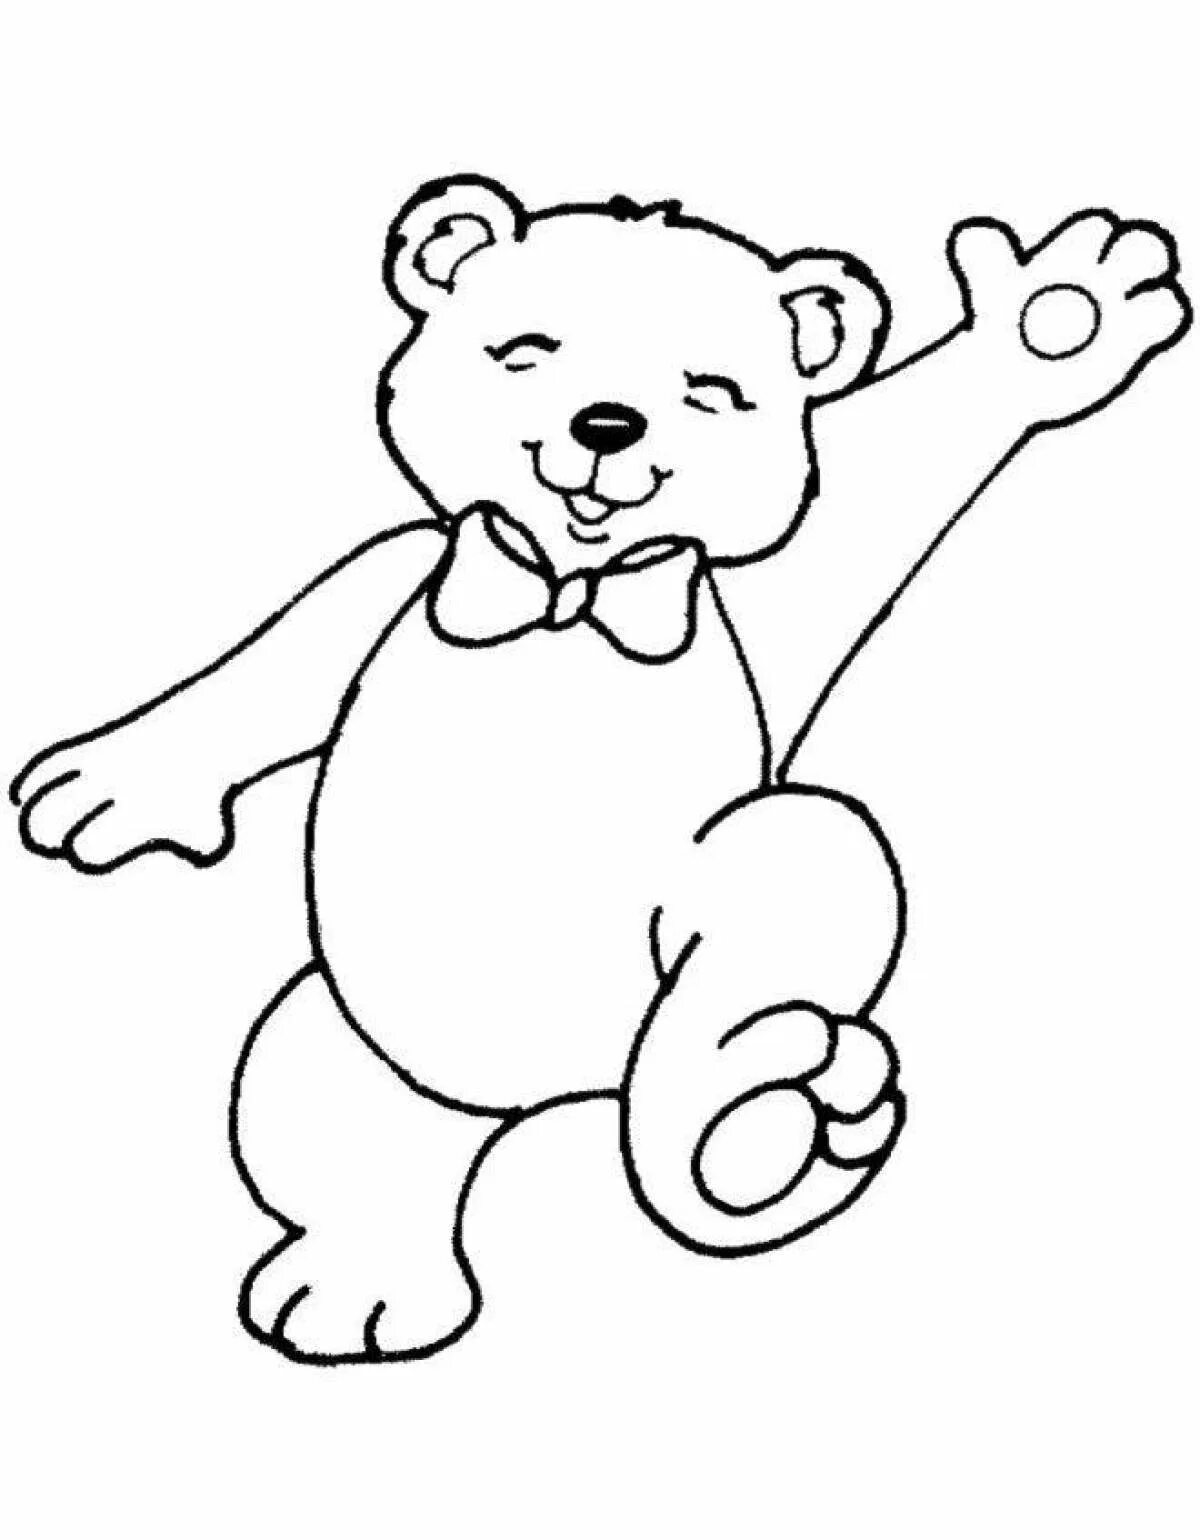 Раскраска. Медвежонок. Медведь раскраска. Медведь раскраска для детей. Раскраска "мишки". Раскраски для детей 3 года мишки